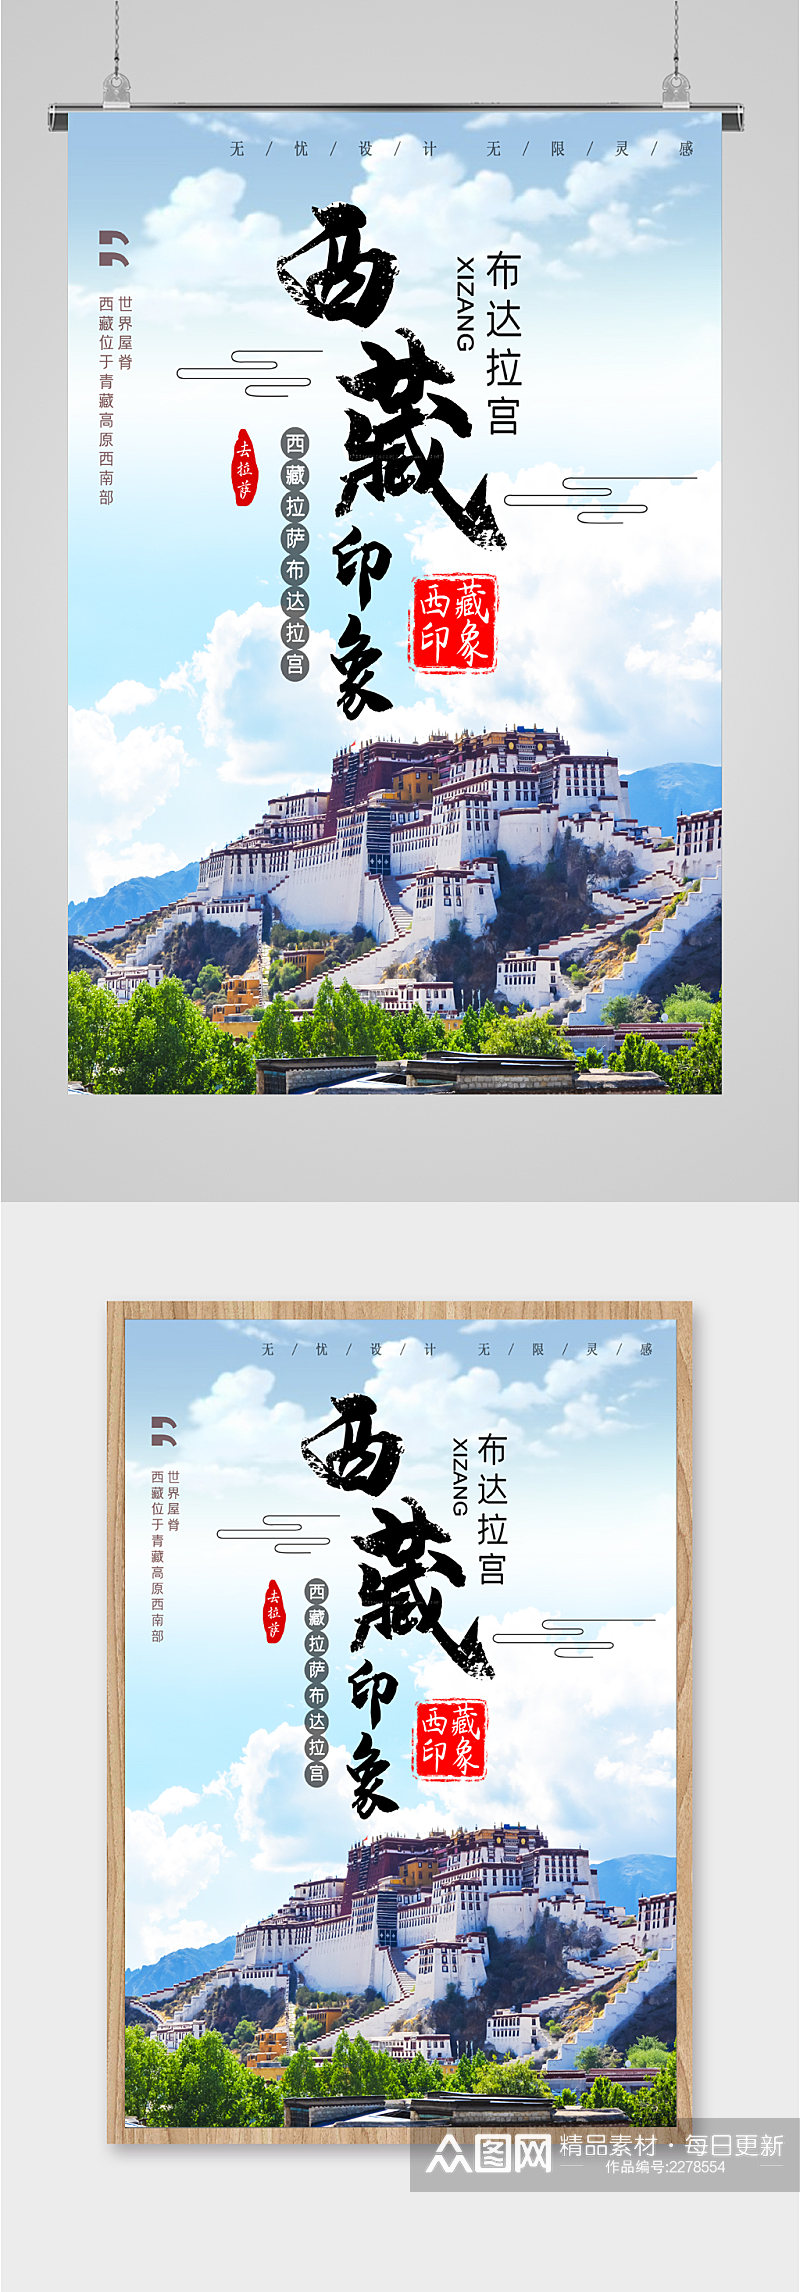 西藏印象景点旅游海报素材